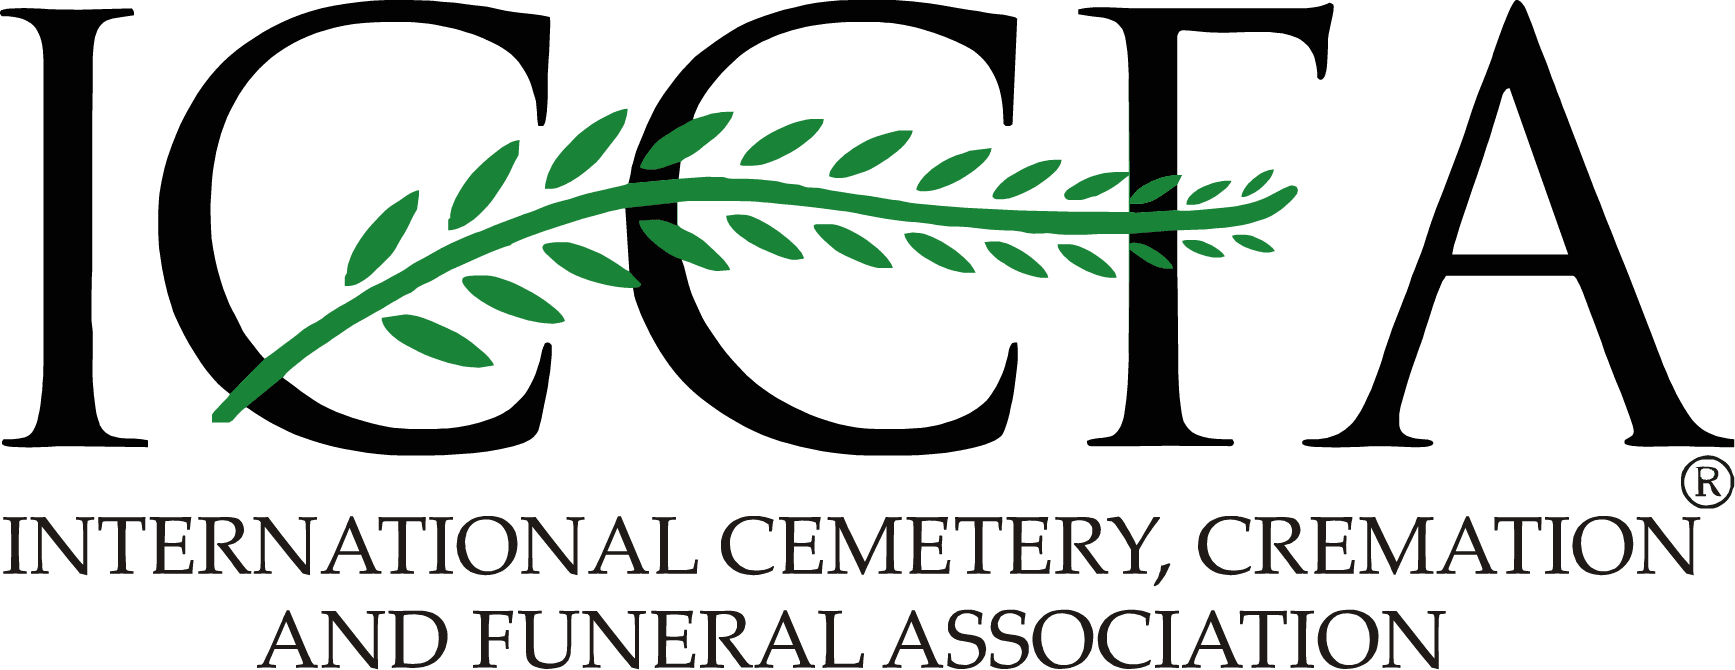 ICCFA logo